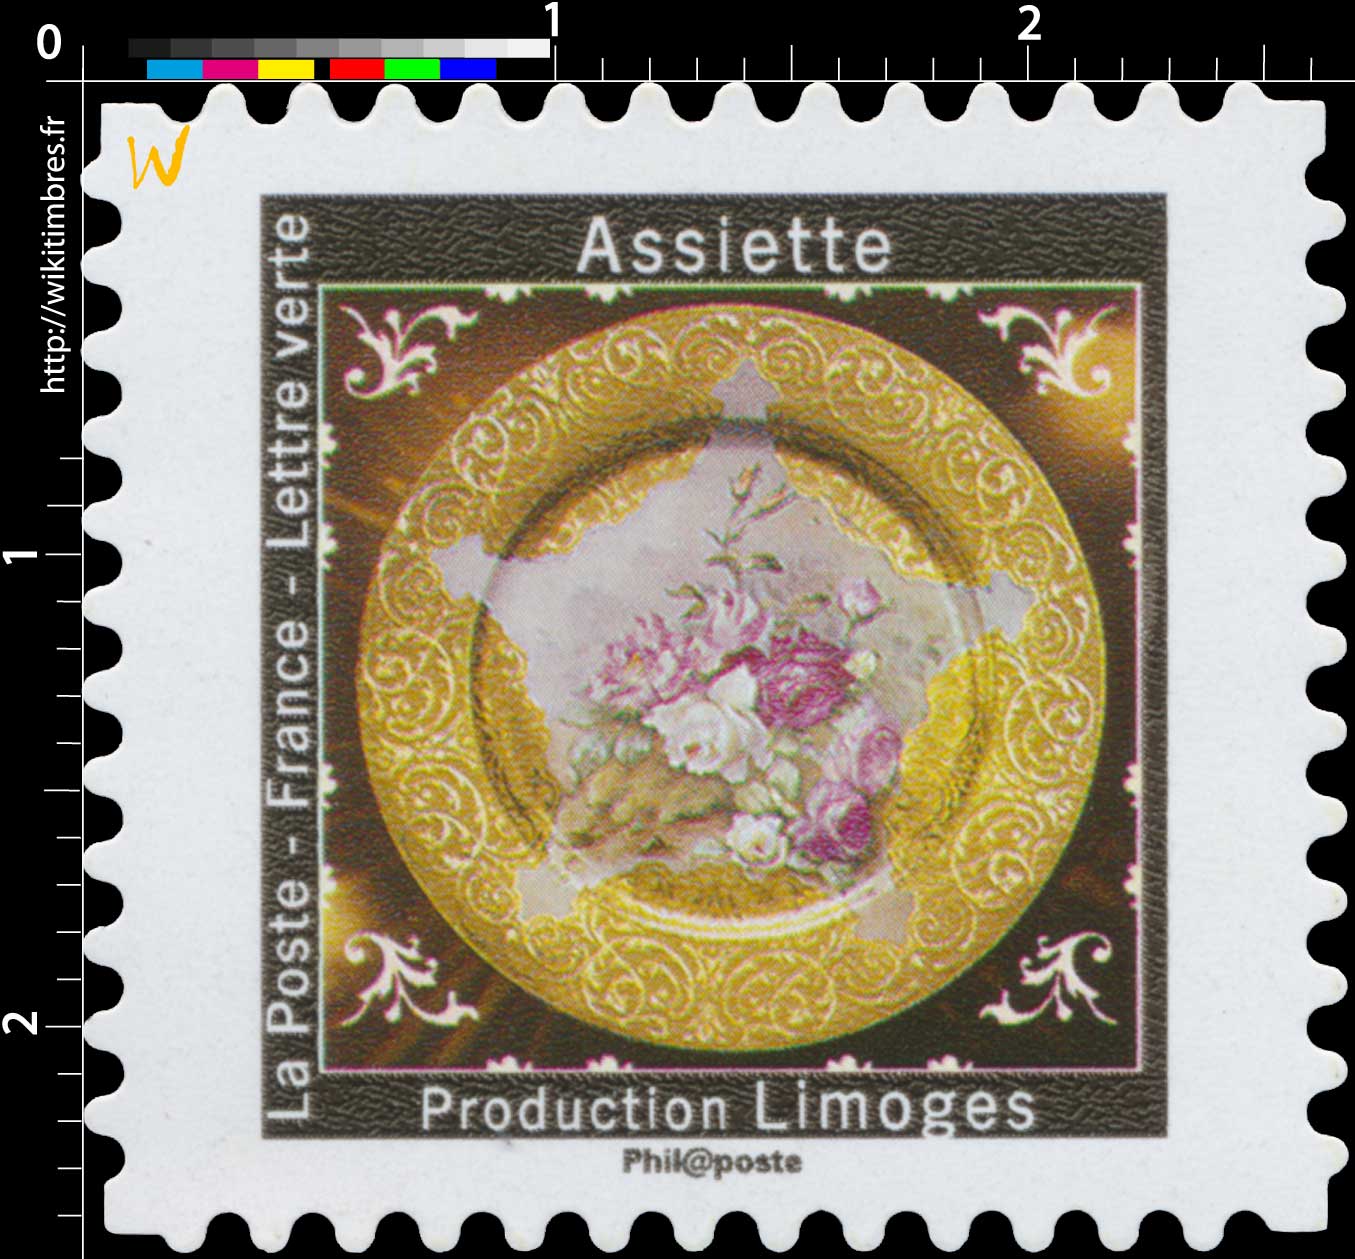 2019 Assiette - Production Limoges